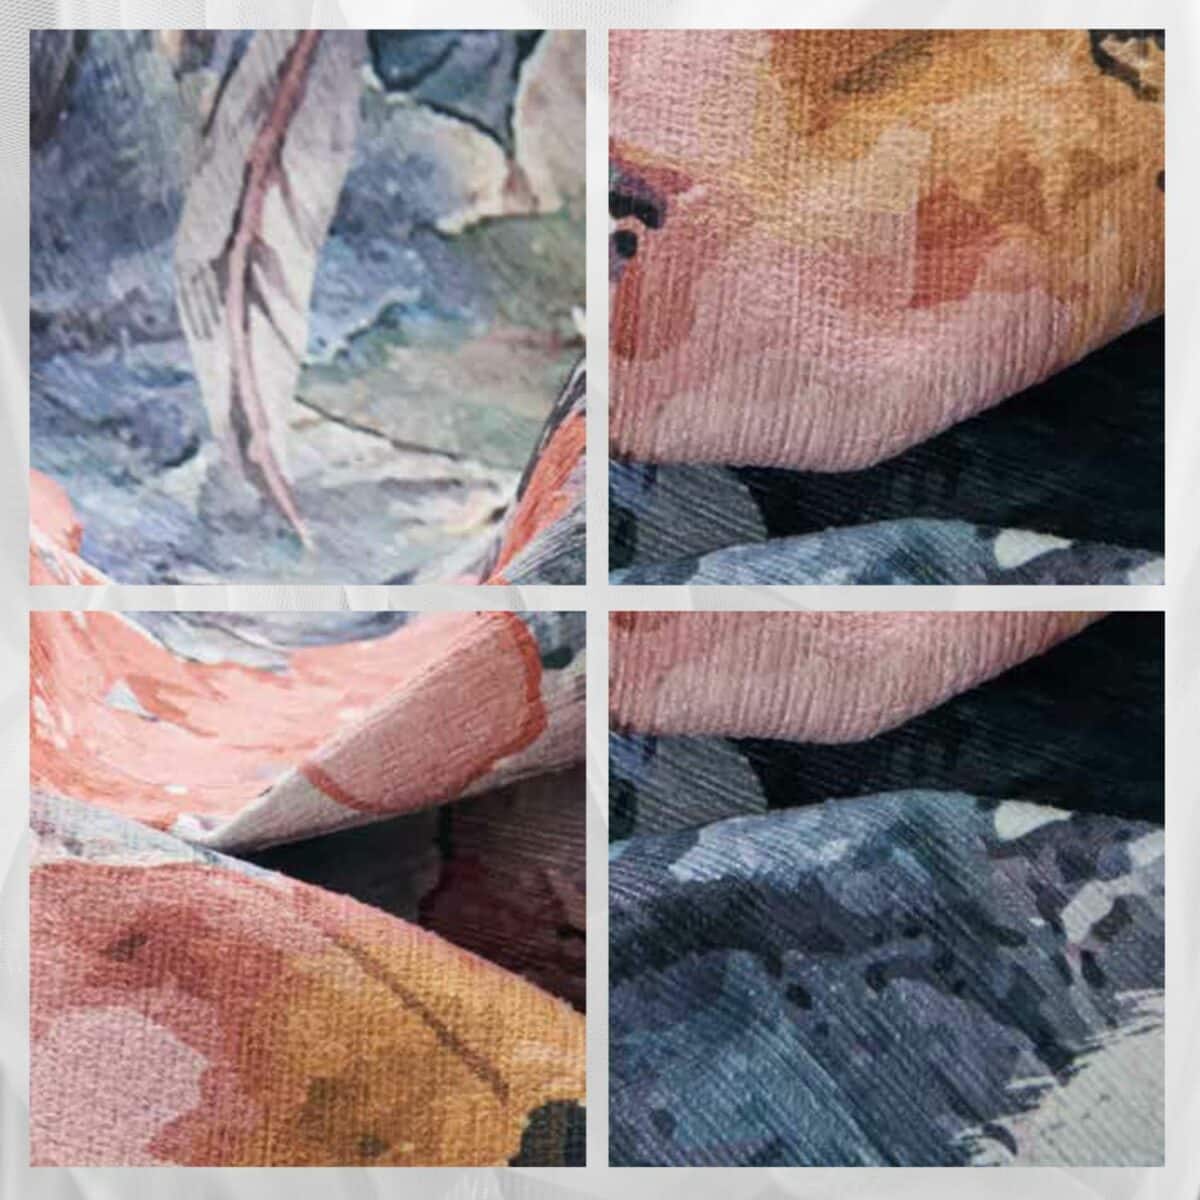 kyoto-tappeto-arredo-emozioni-artista-fiorato-multicolor-dettagli